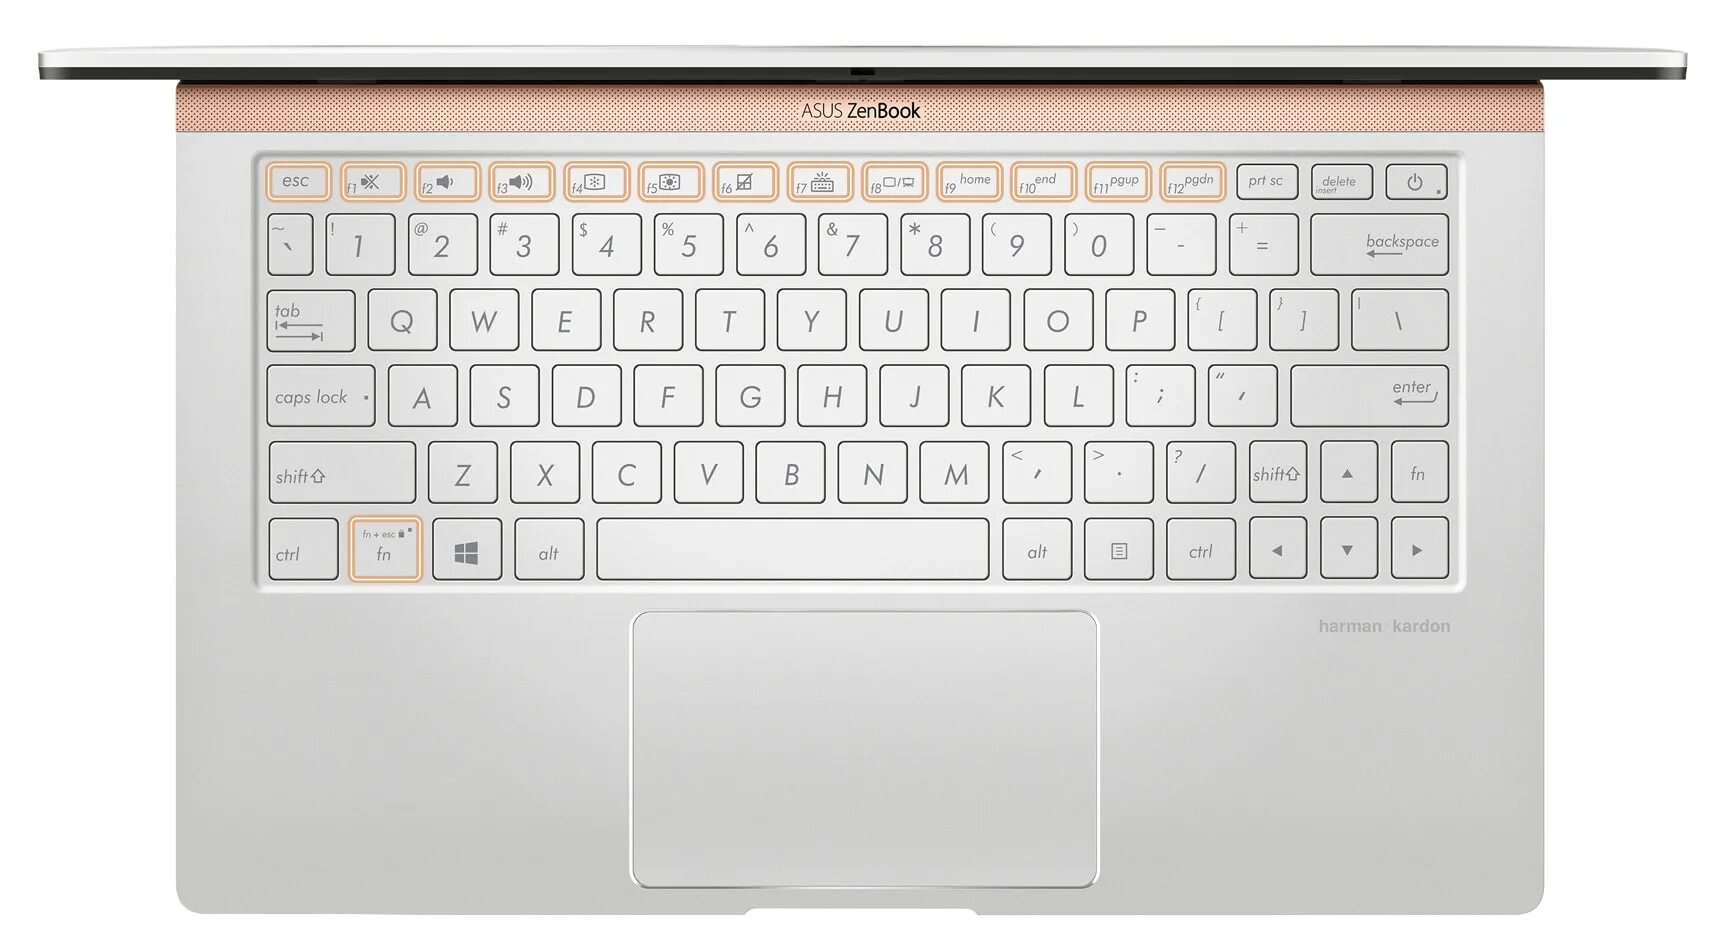 Как включить asus zenbook. ASUS ZENBOOK 14 Ultra-Slim Laptop. Number Pad ASUS ZENBOOK. Ux433fac клавиатура. Асус зенбук клавиатура с экраном.